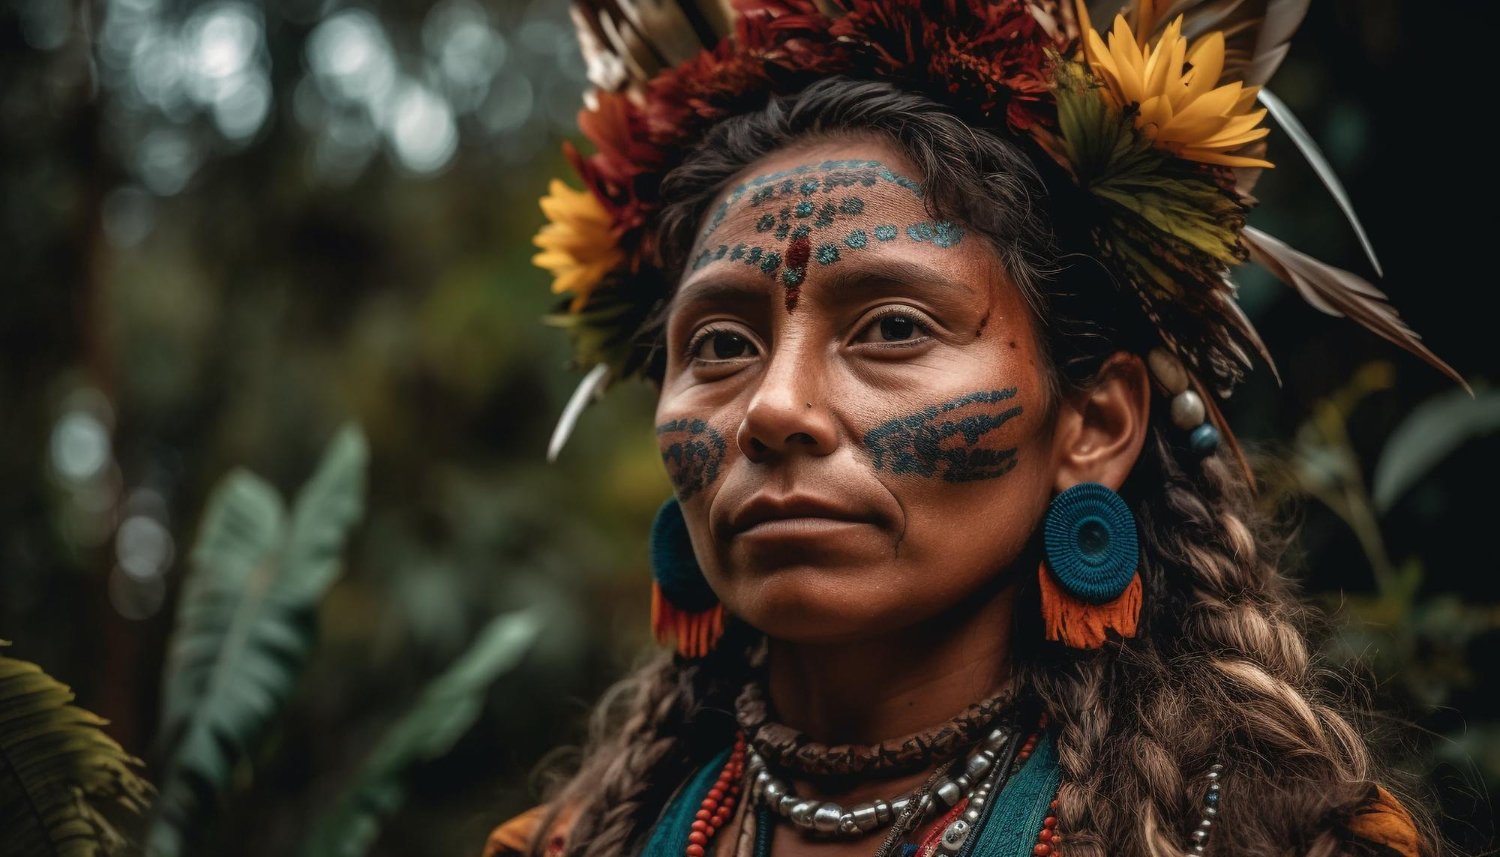 Entre banhos e receitas, o que herdamos das mulheres indígenas?